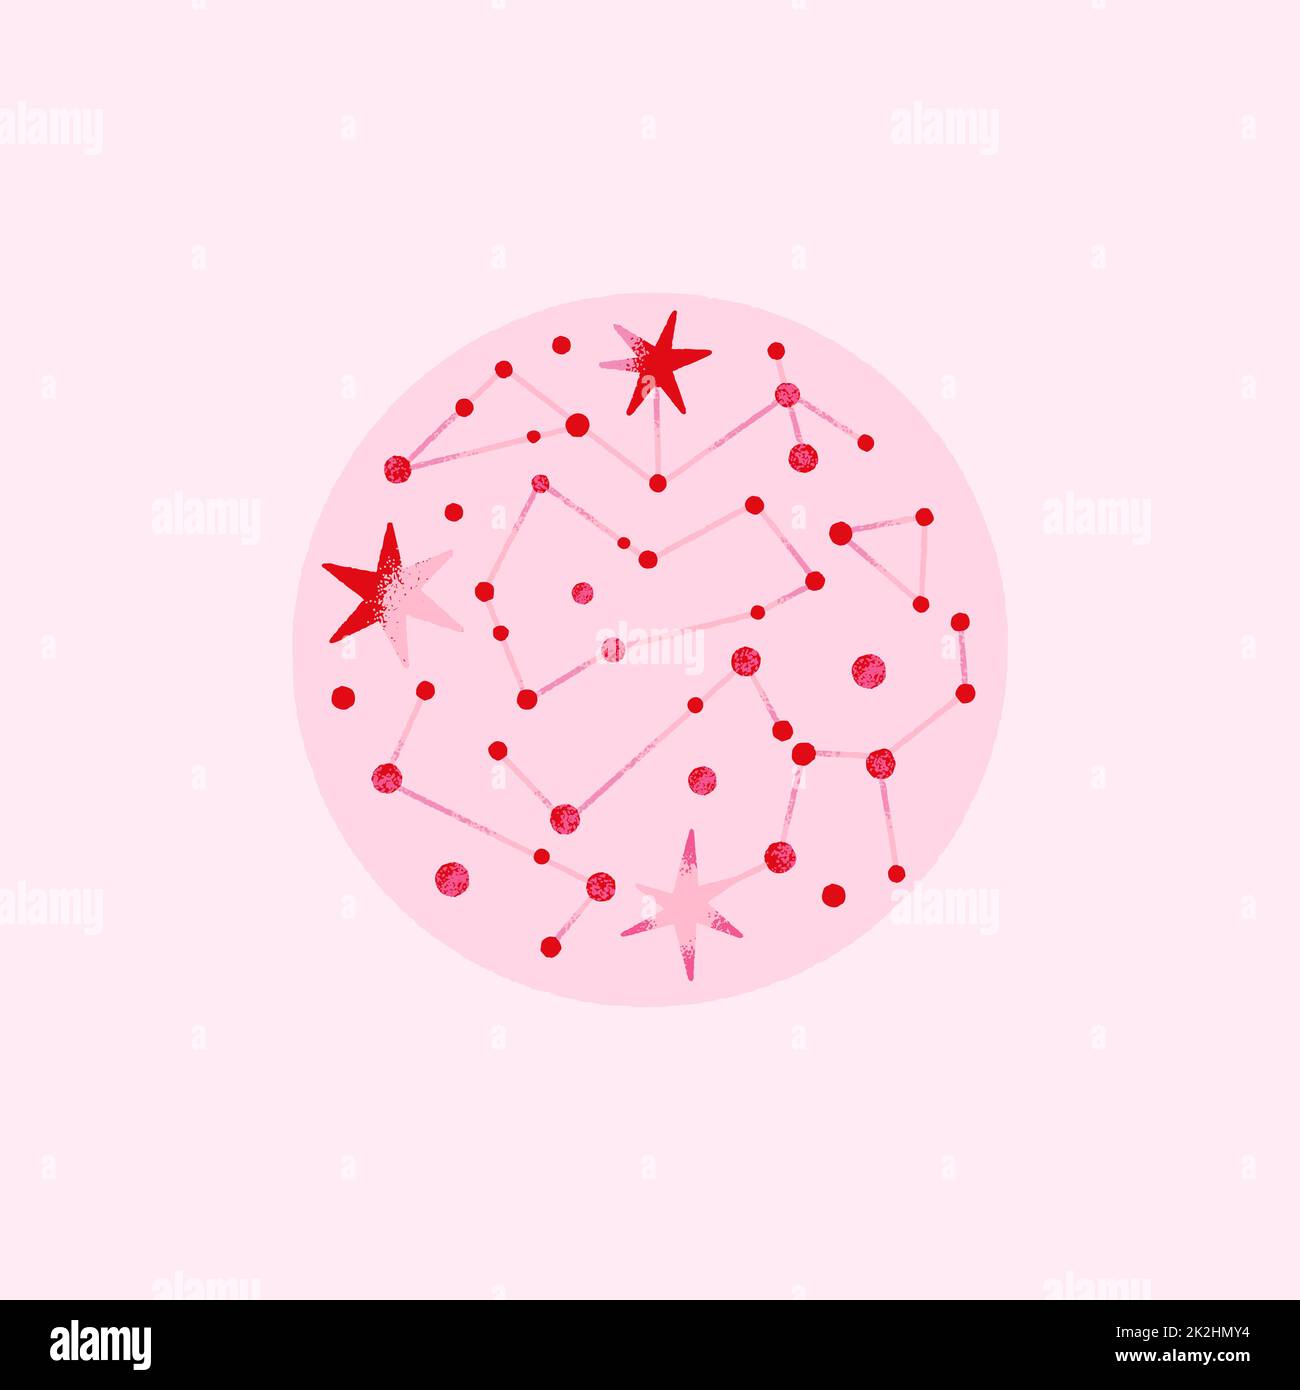 Composition de l'espace avec des planètes et des étoiles de couleurs rose et rouge. Illustration vectorielle sur le thème de l'astrologie, de l'astronomie Banque D'Images